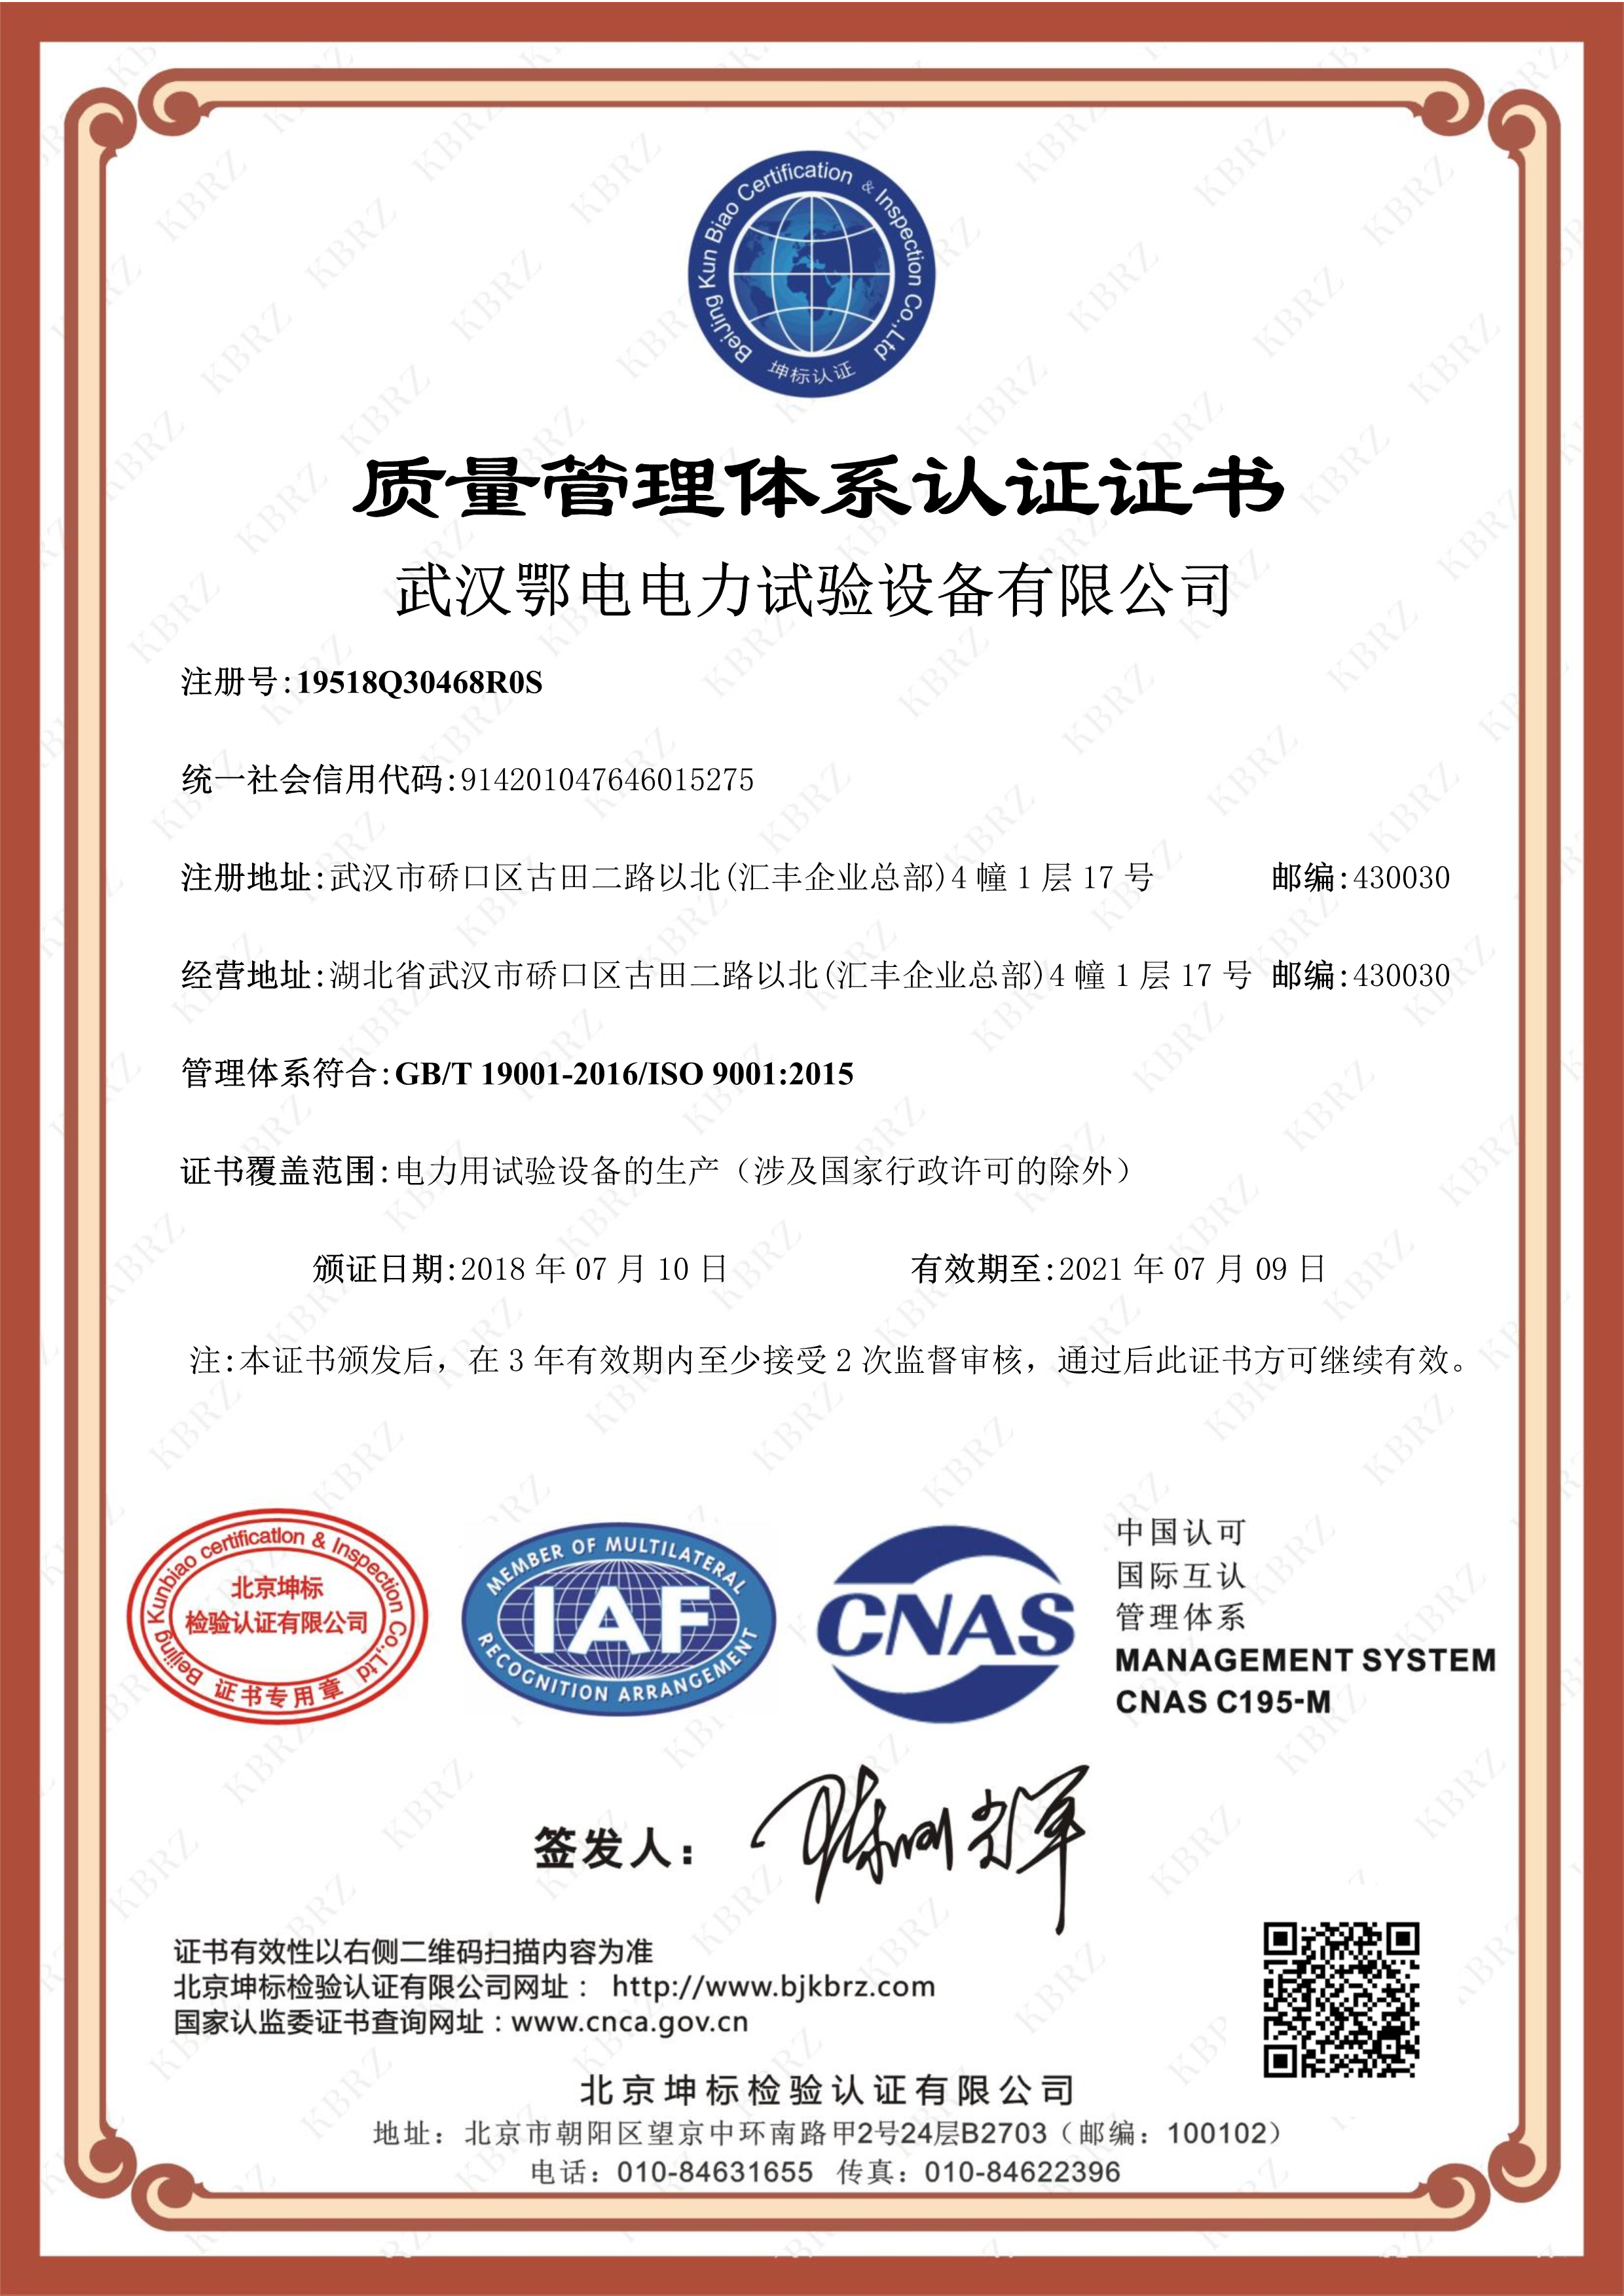 武汉鄂电电力试验设备有限公司 ISO9001 Q IAF中文证书